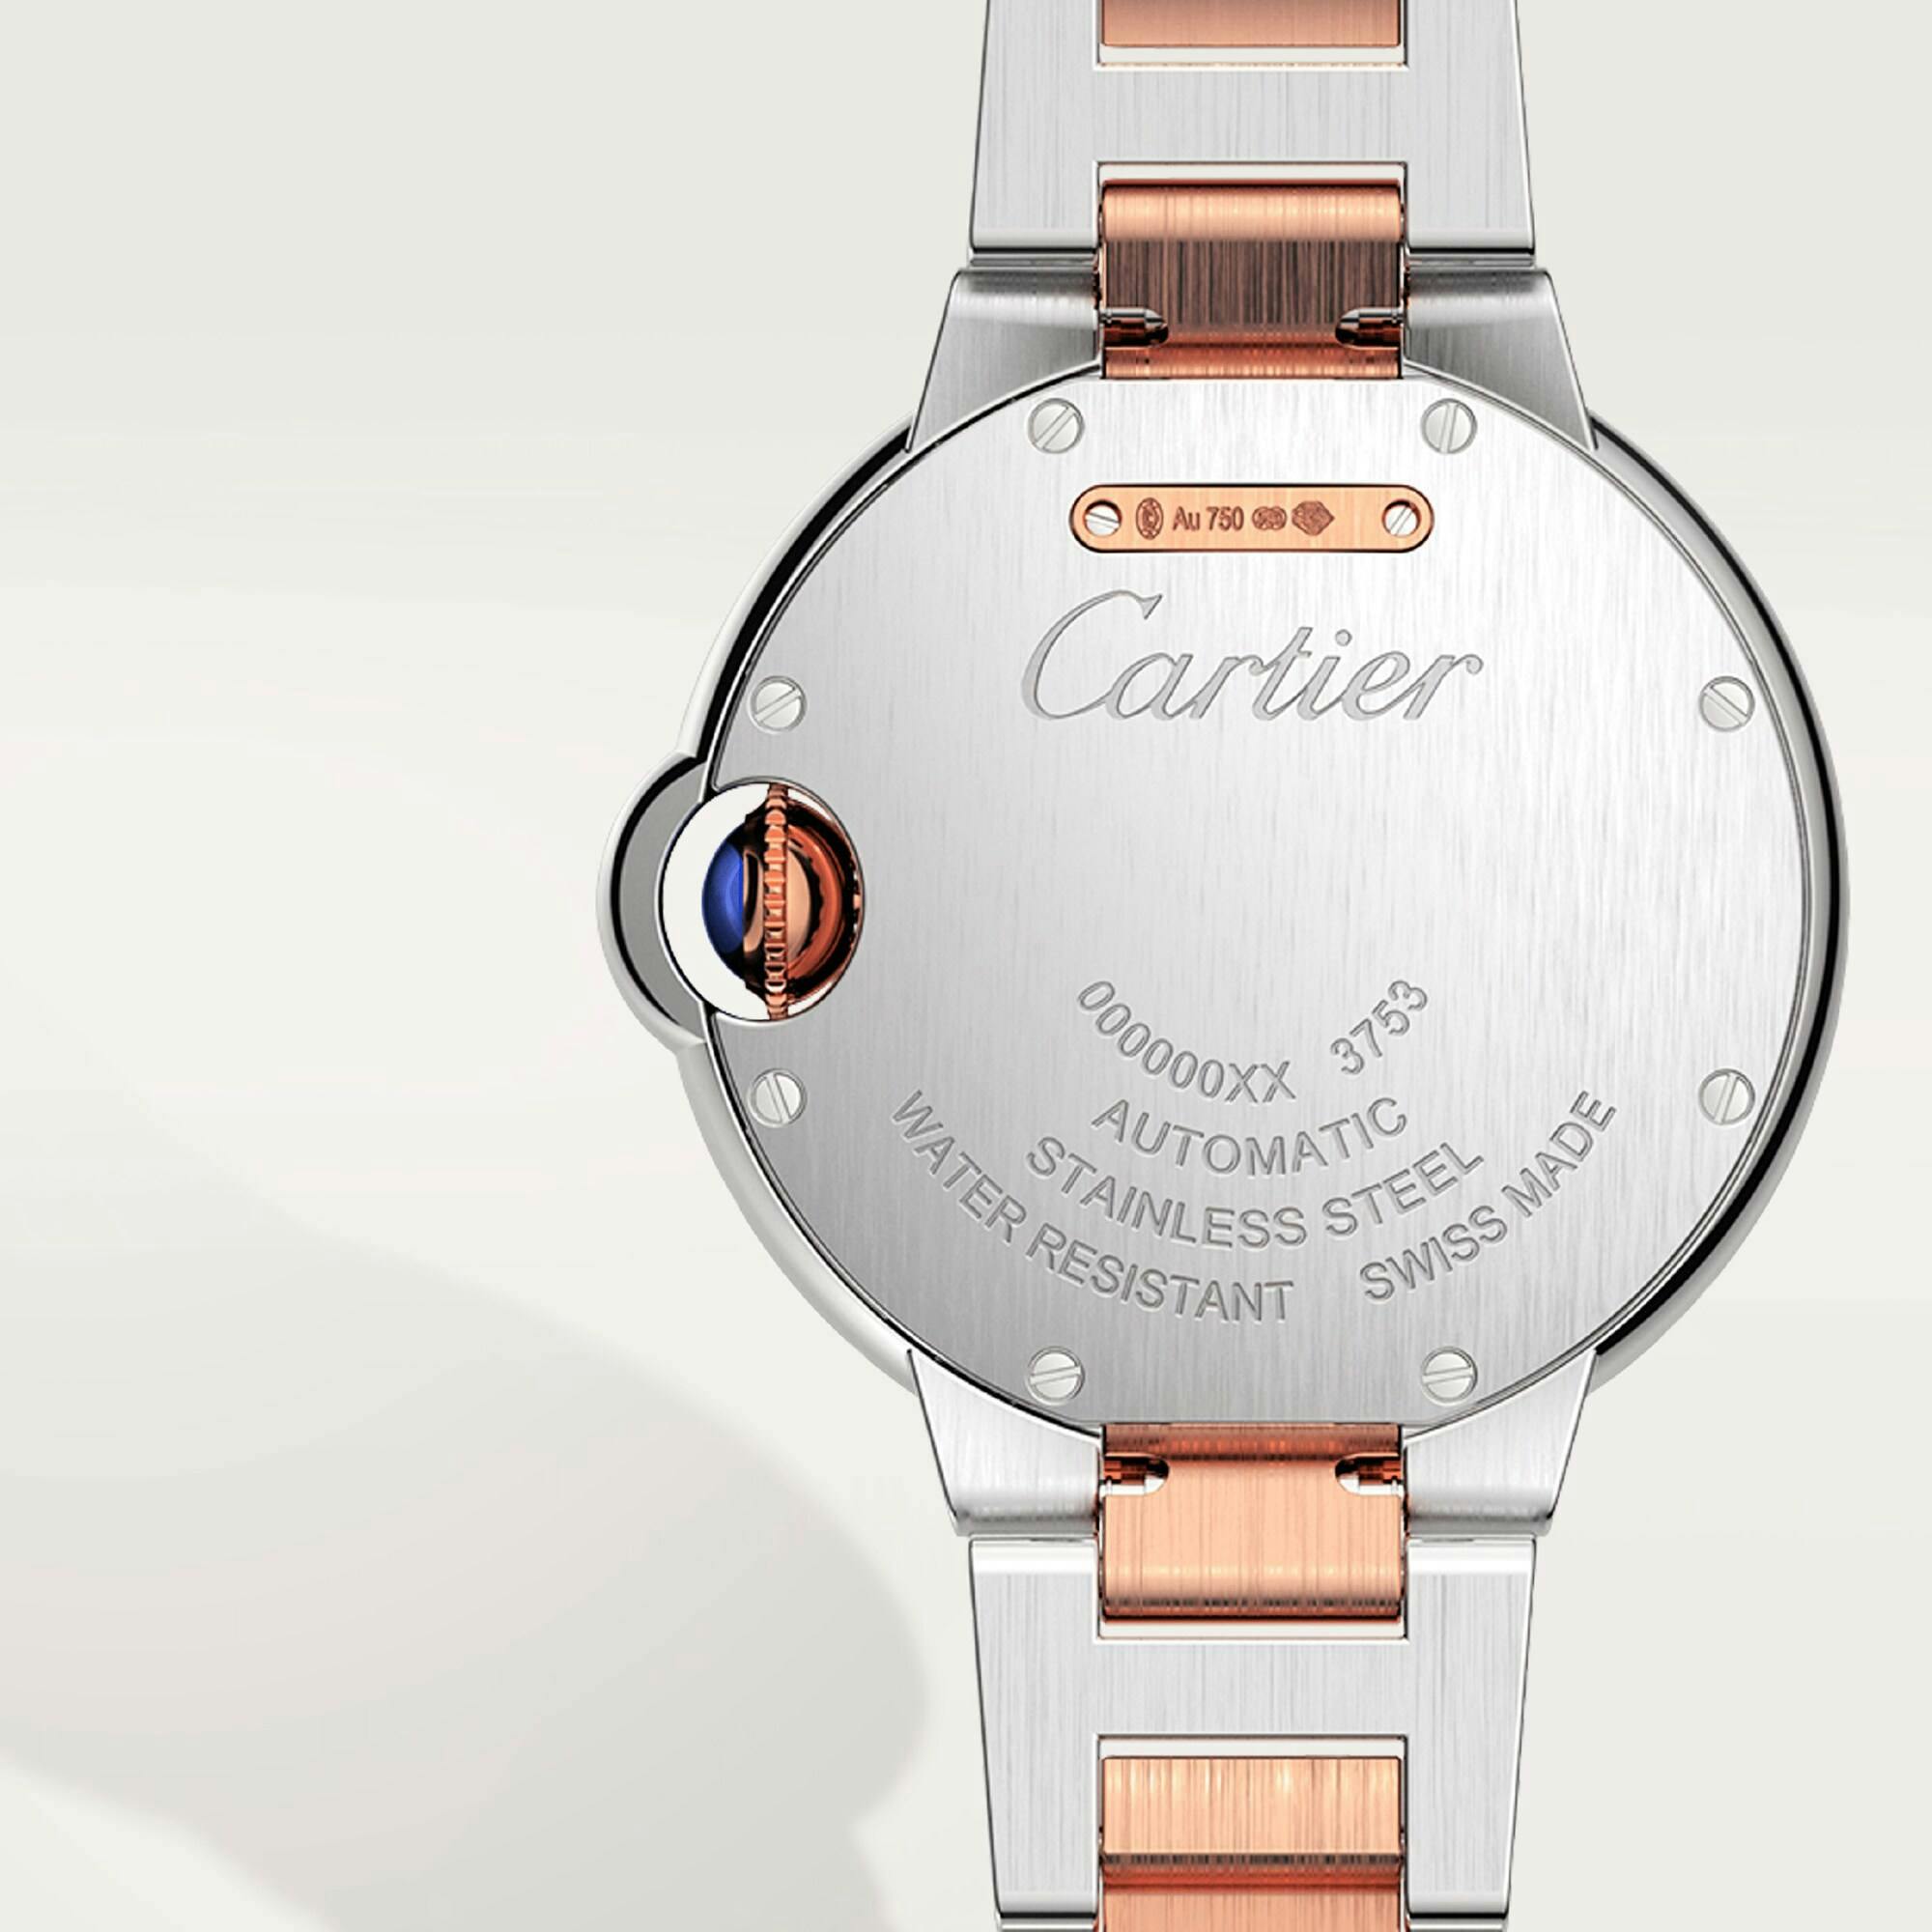 Ballon Bleu de Cartier Watch in Rose Gold with Diamonds, 33mm 4